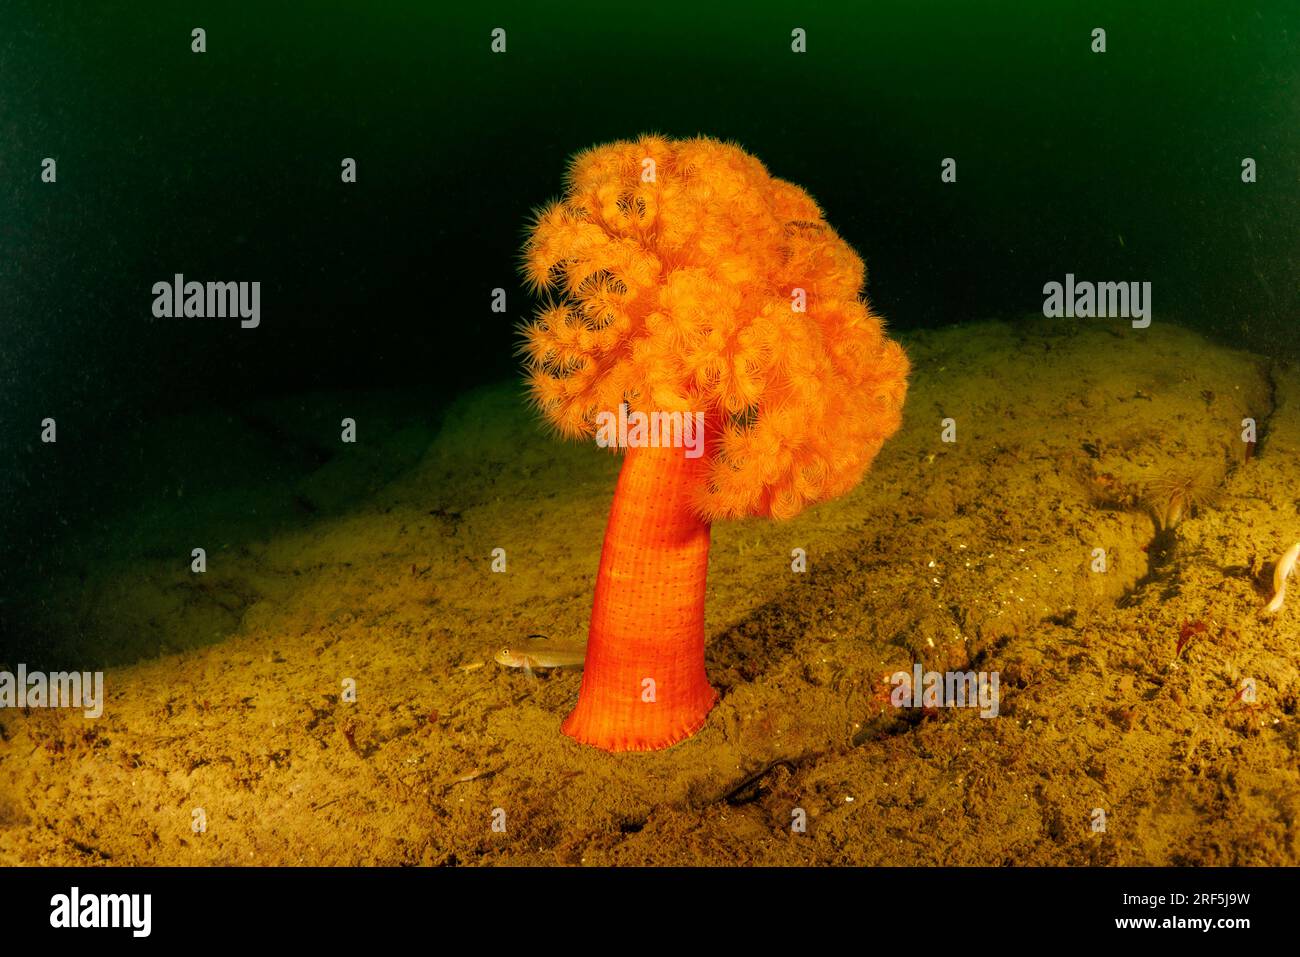 A lone orange plumose anemone, Metridium senile, in the Pacific Northwest Ocean, British Columbia, Canada. Stock Photo